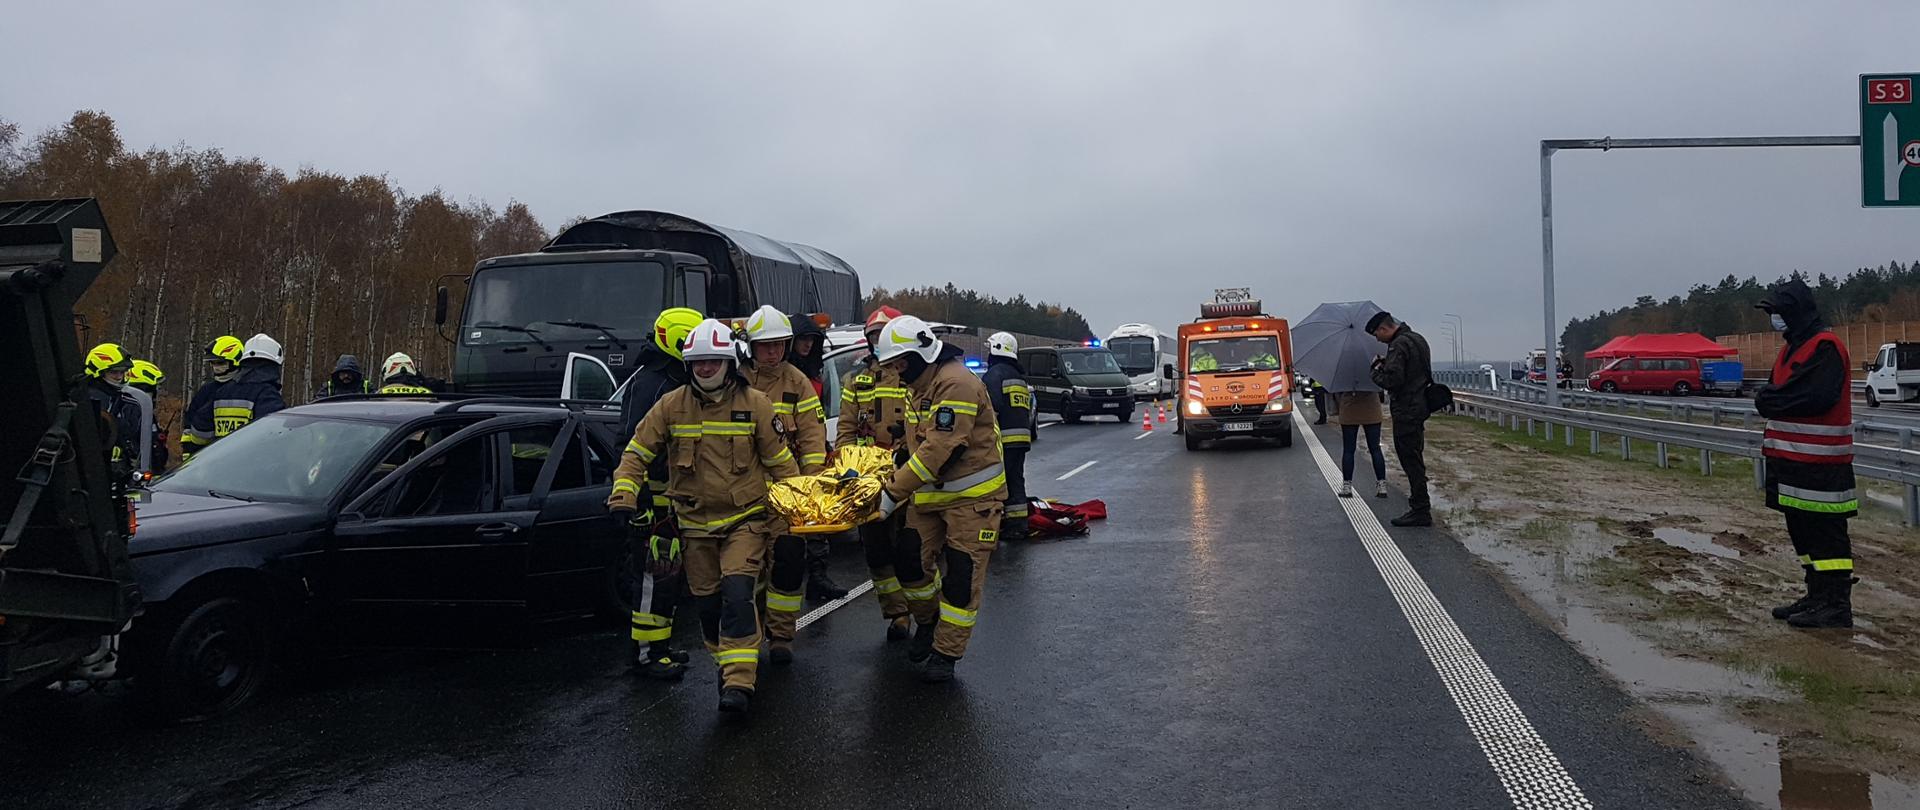 Na zdjęciu widać ćwiczenia służb ratowniczych na nieoddanym jeszcze do ruchu odcinku drogi ekspresowej S3, które odbył się na początku listopada 2021 roku. Ćwiczenia odbył się przy udziale policji, straży pożarnej, służb medycznych, wojska polskiego i GDDKiA. 